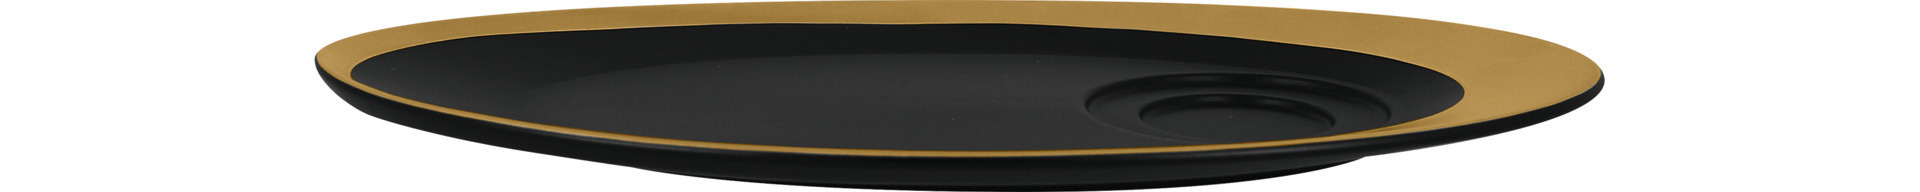 Untertasse oval 290 x 160 mm für GICU23/GICU09 schwarz / gold